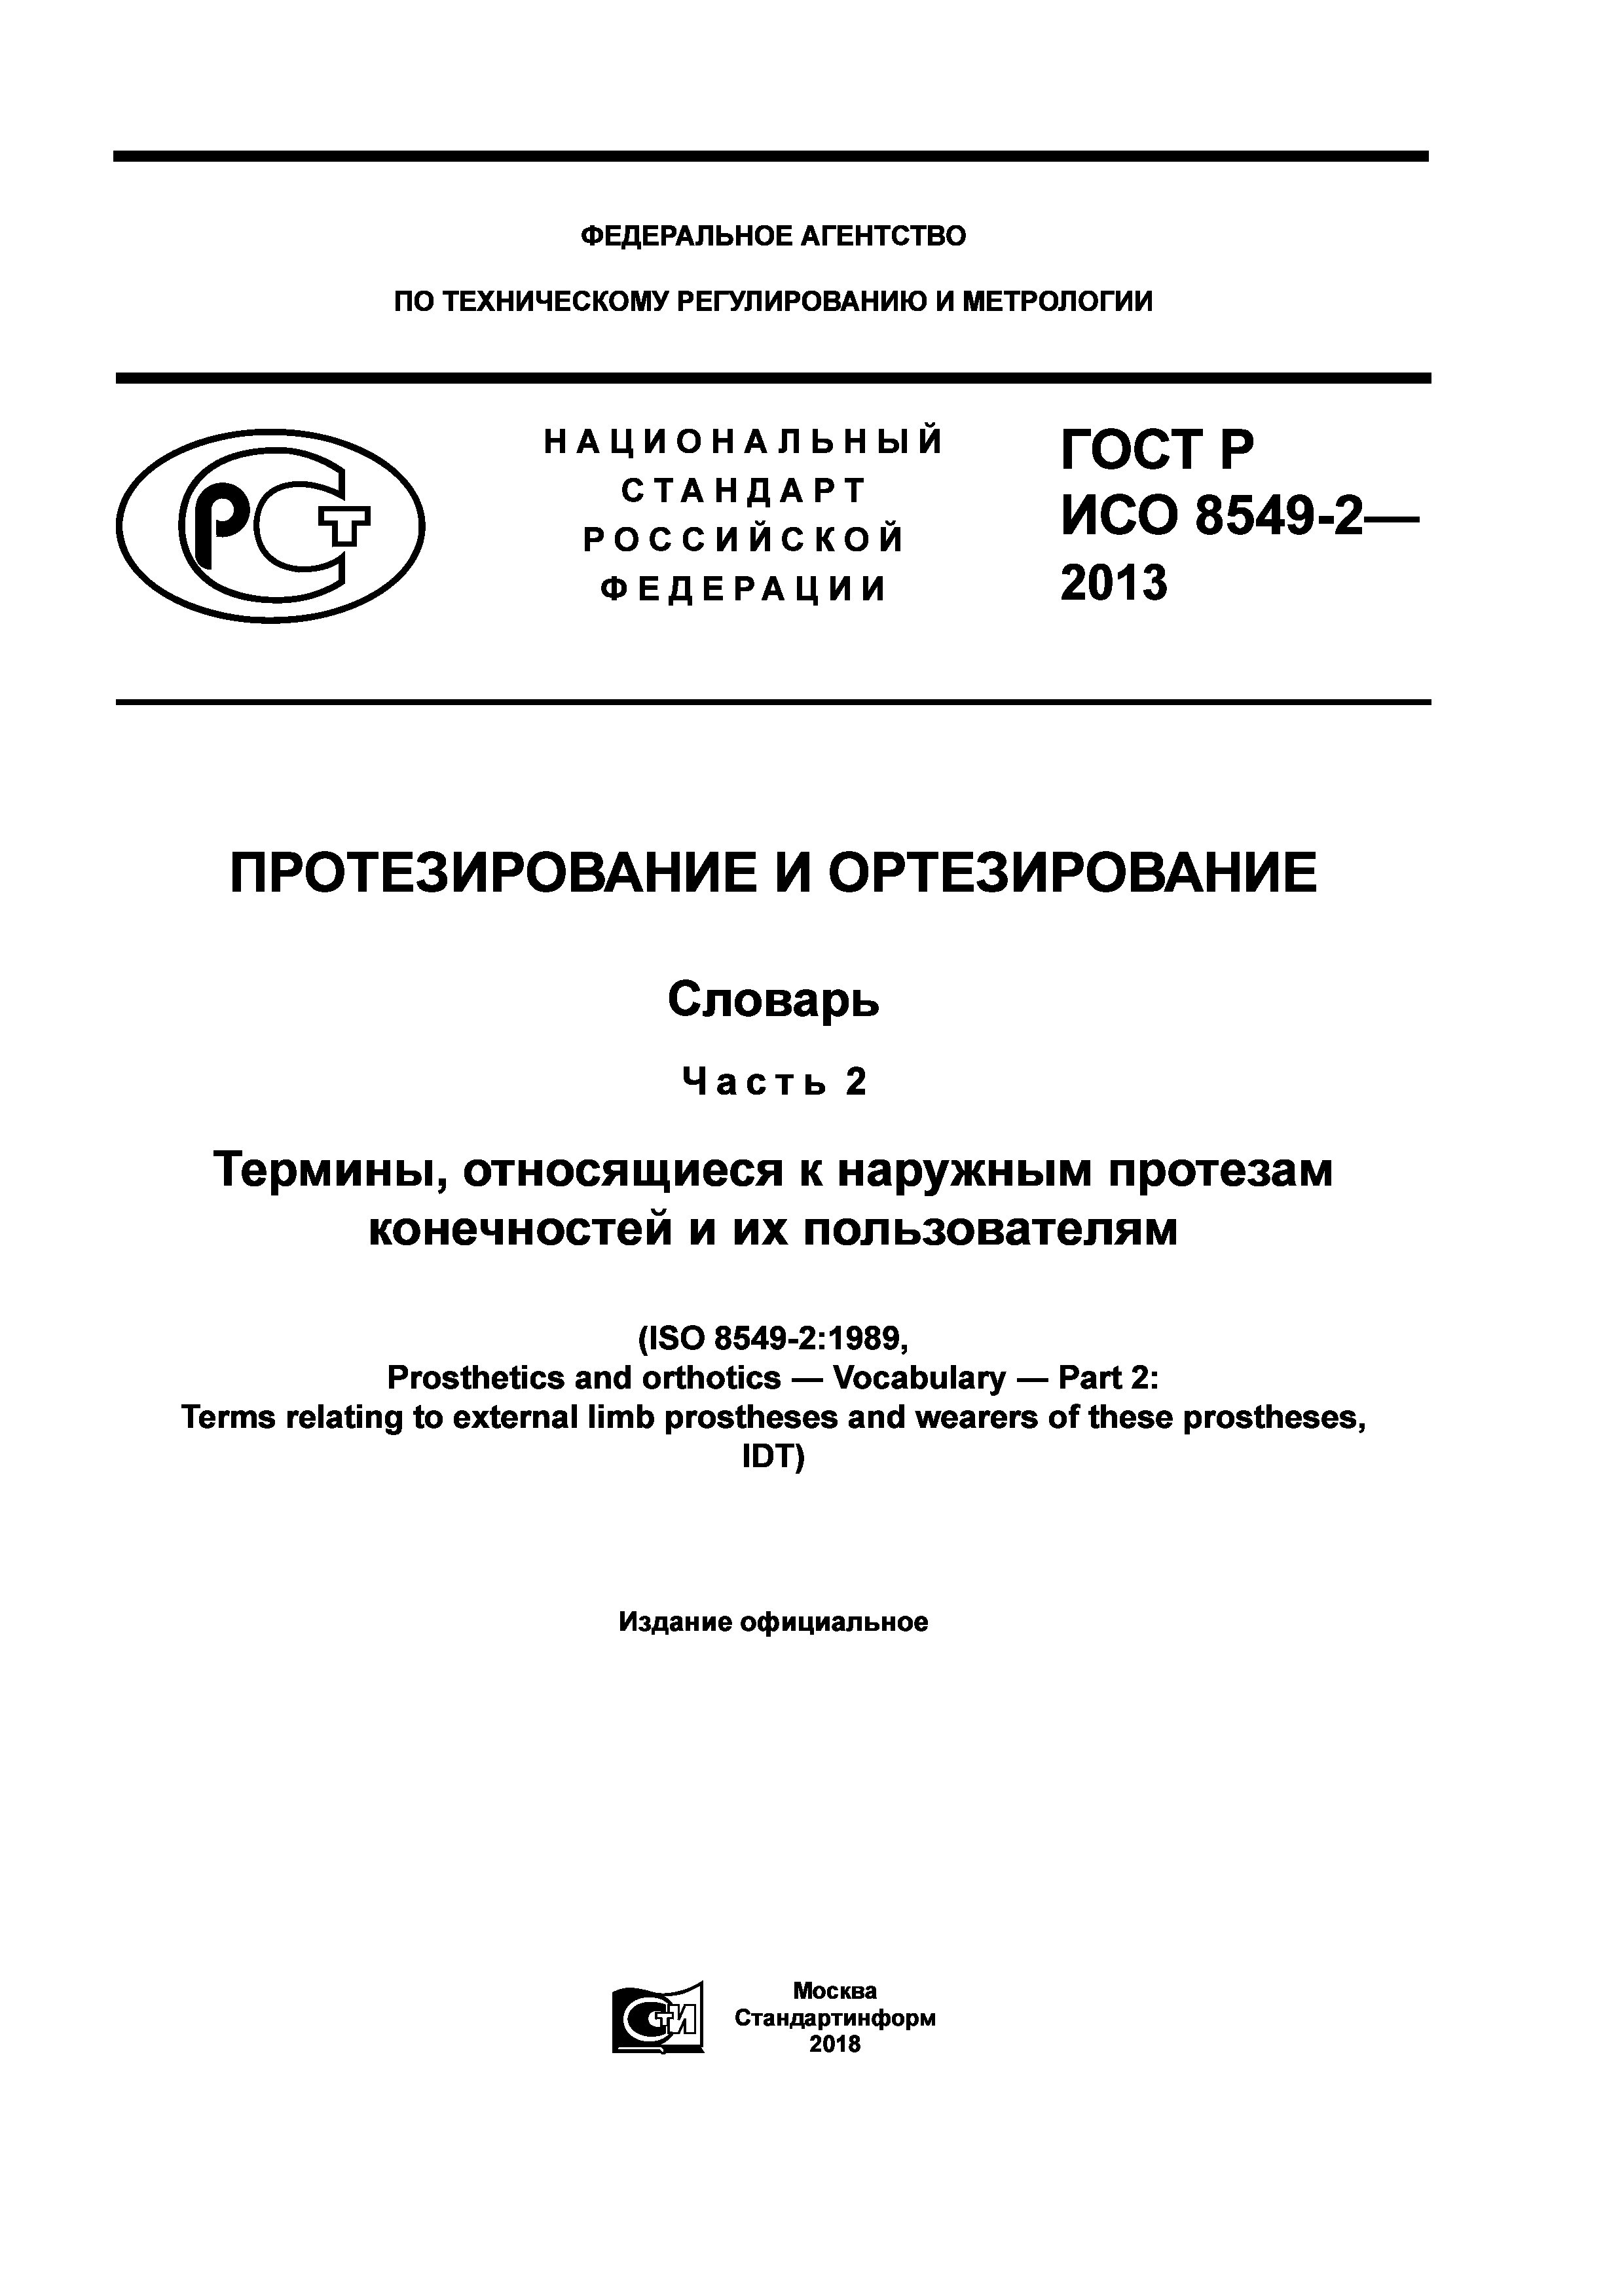 ГОСТ Р ИСО 8549-2-2013